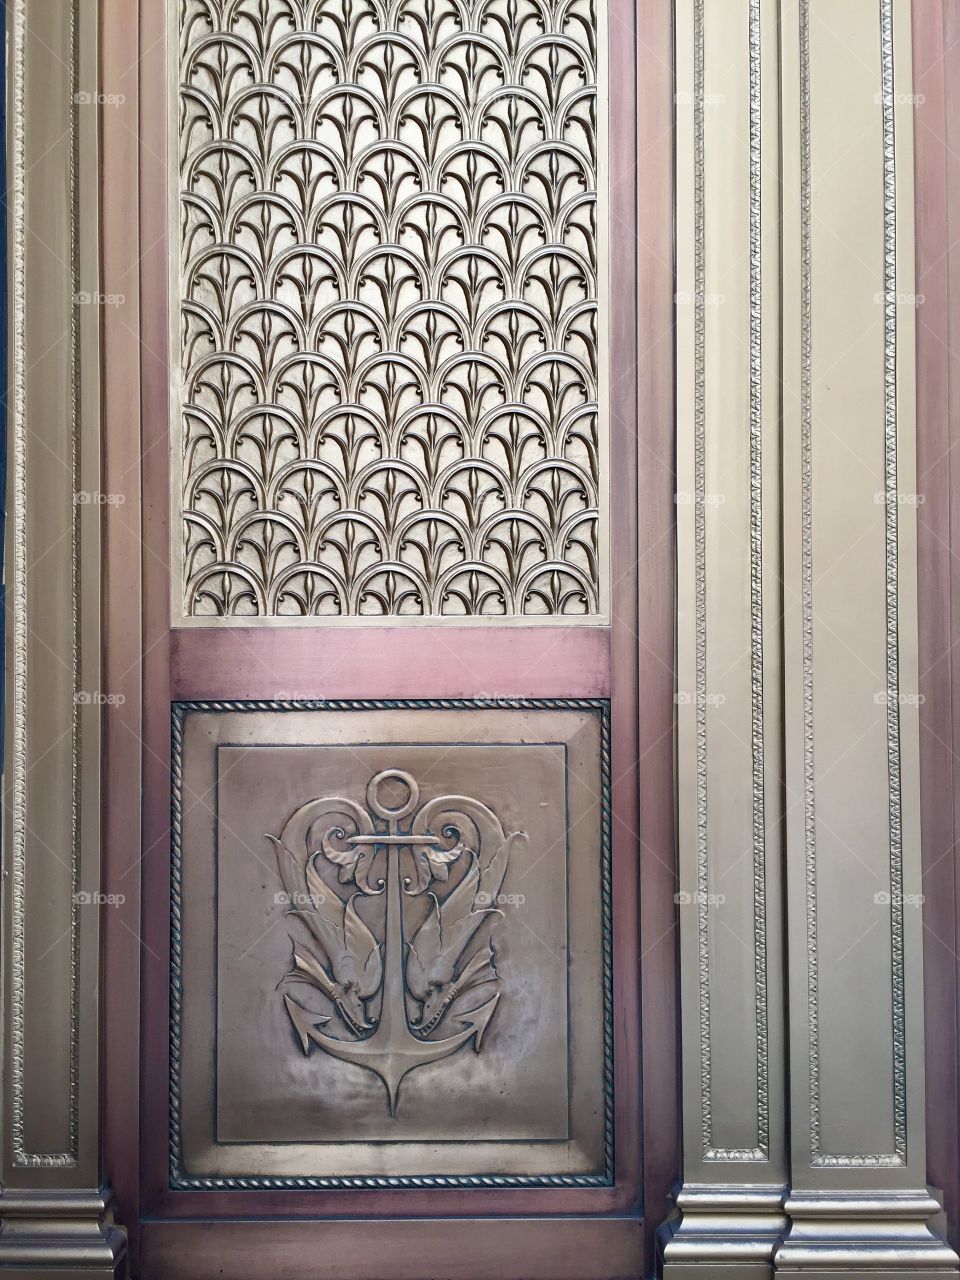 Brass door details, Cunard's Offices, Manhattan